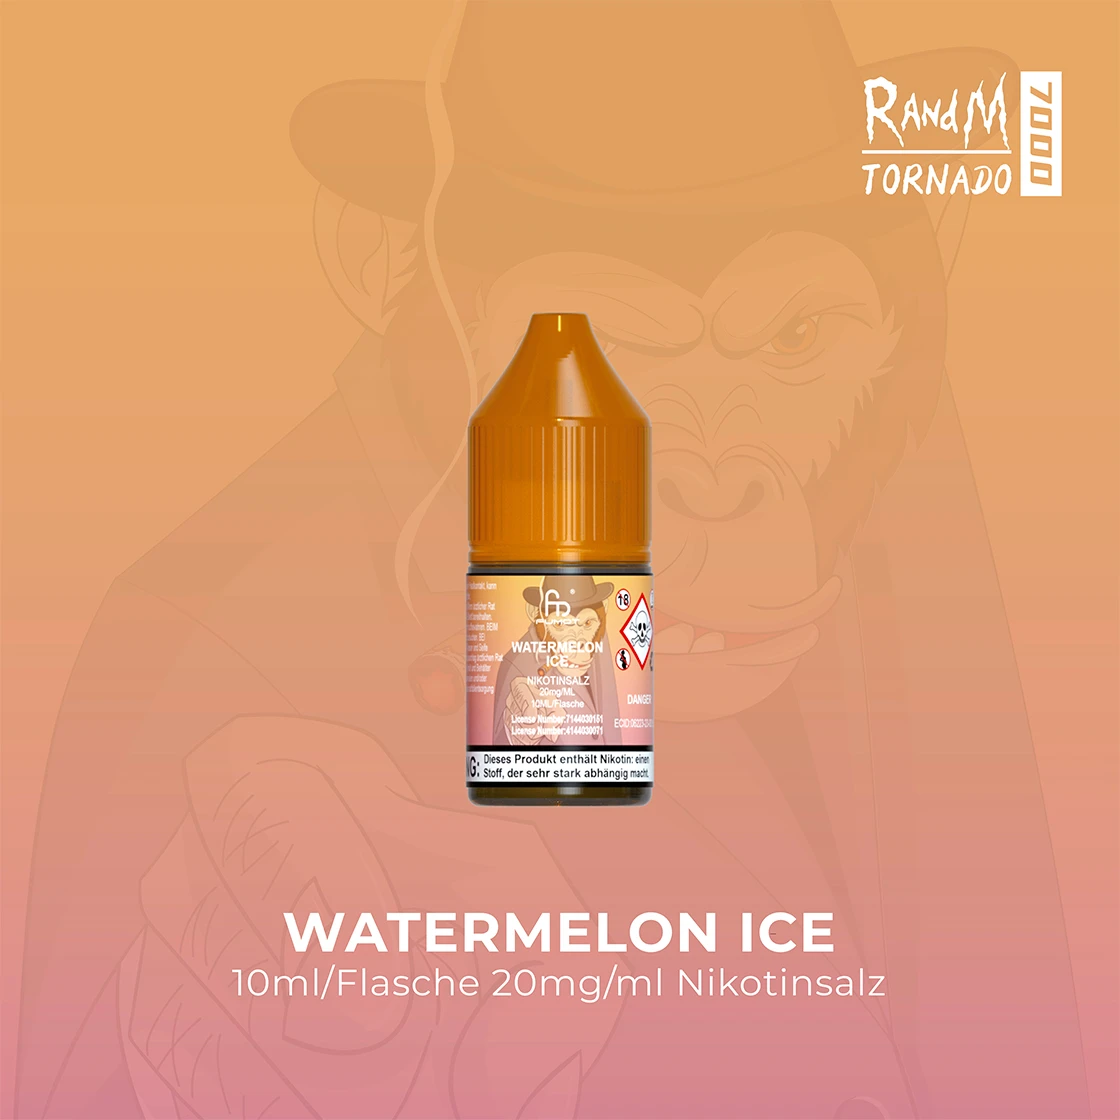 RandM Tornado 7000 Watermelon Ice E-Liquid Nikotinsalz 20 mg | Vape Liquids 1